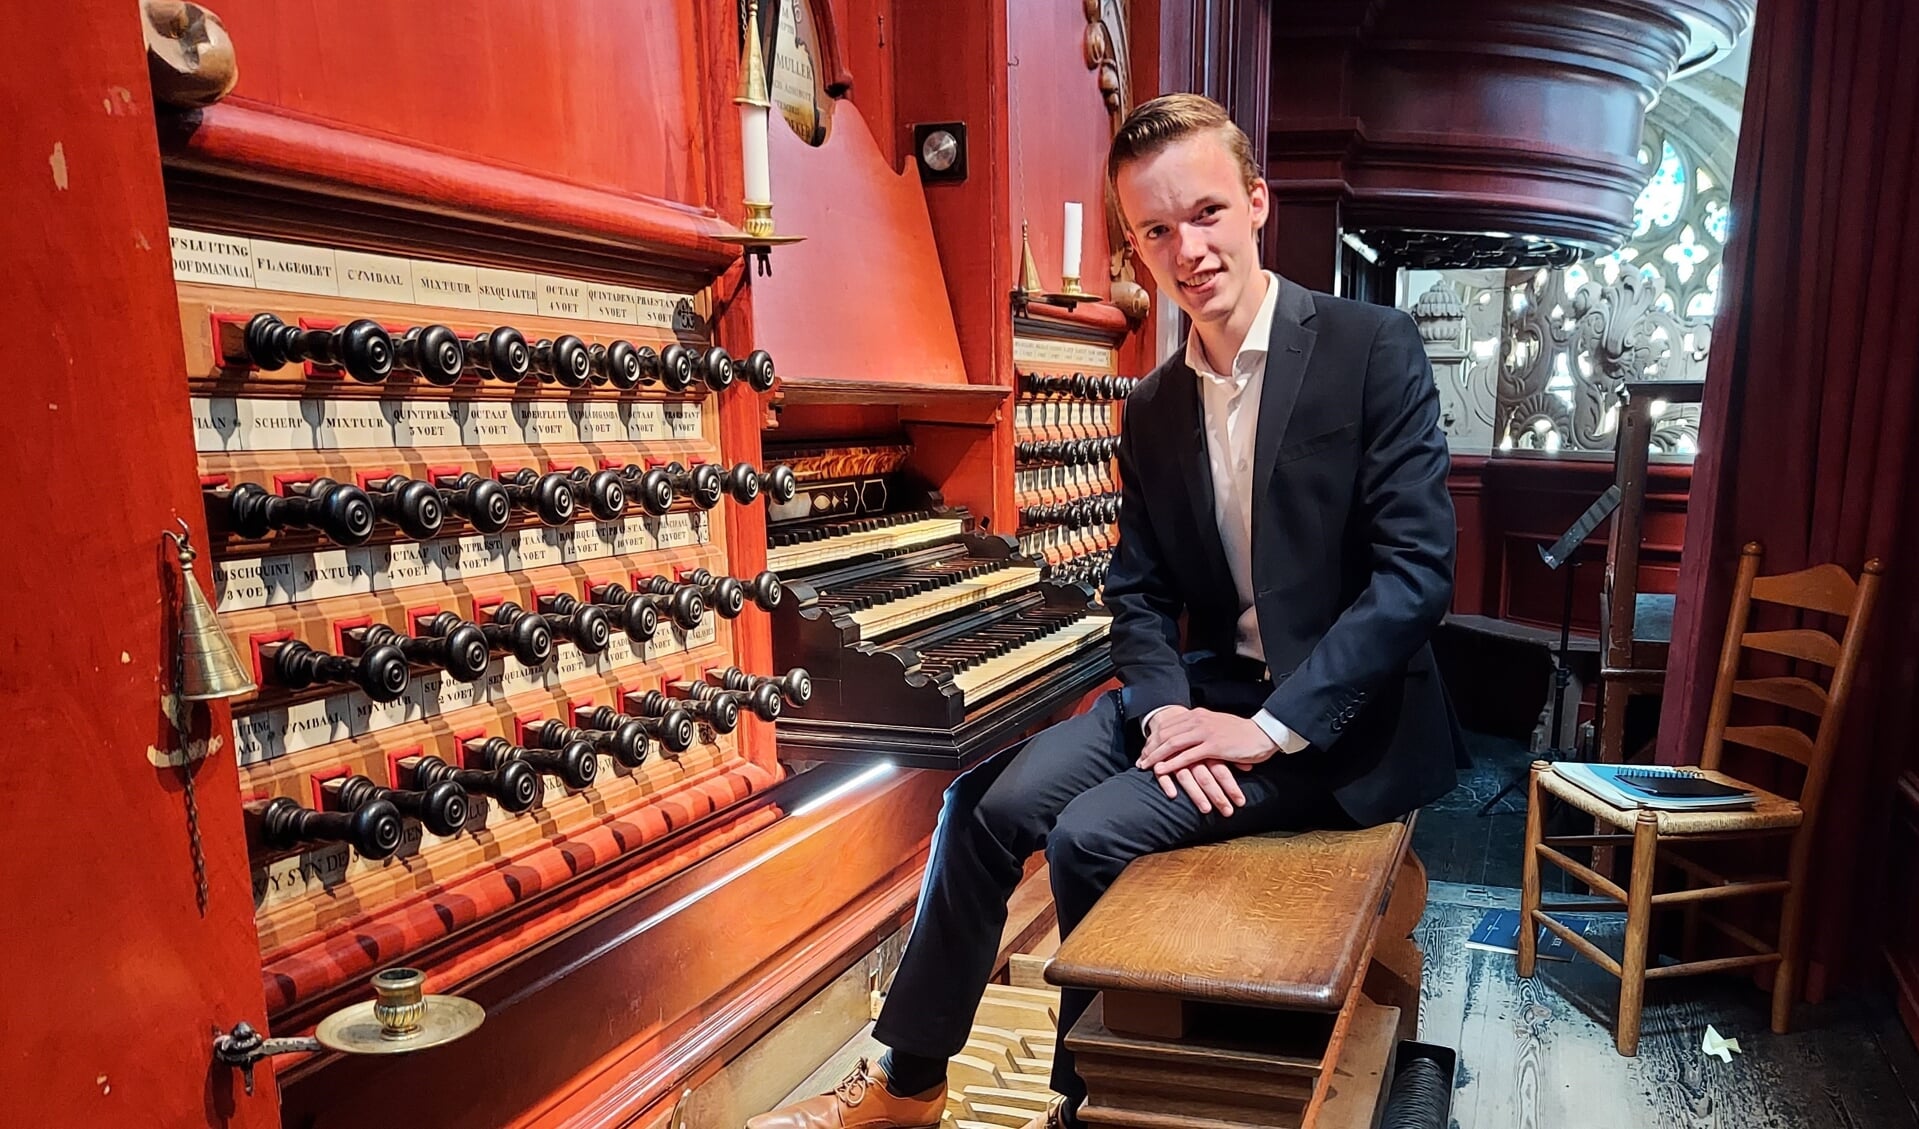 De Bornse organist Maarten Wilmink geeft op 21 mei een optreden in de Kristalkerk in Hengelo. Met een stukje verdieping van het muzikale programma.